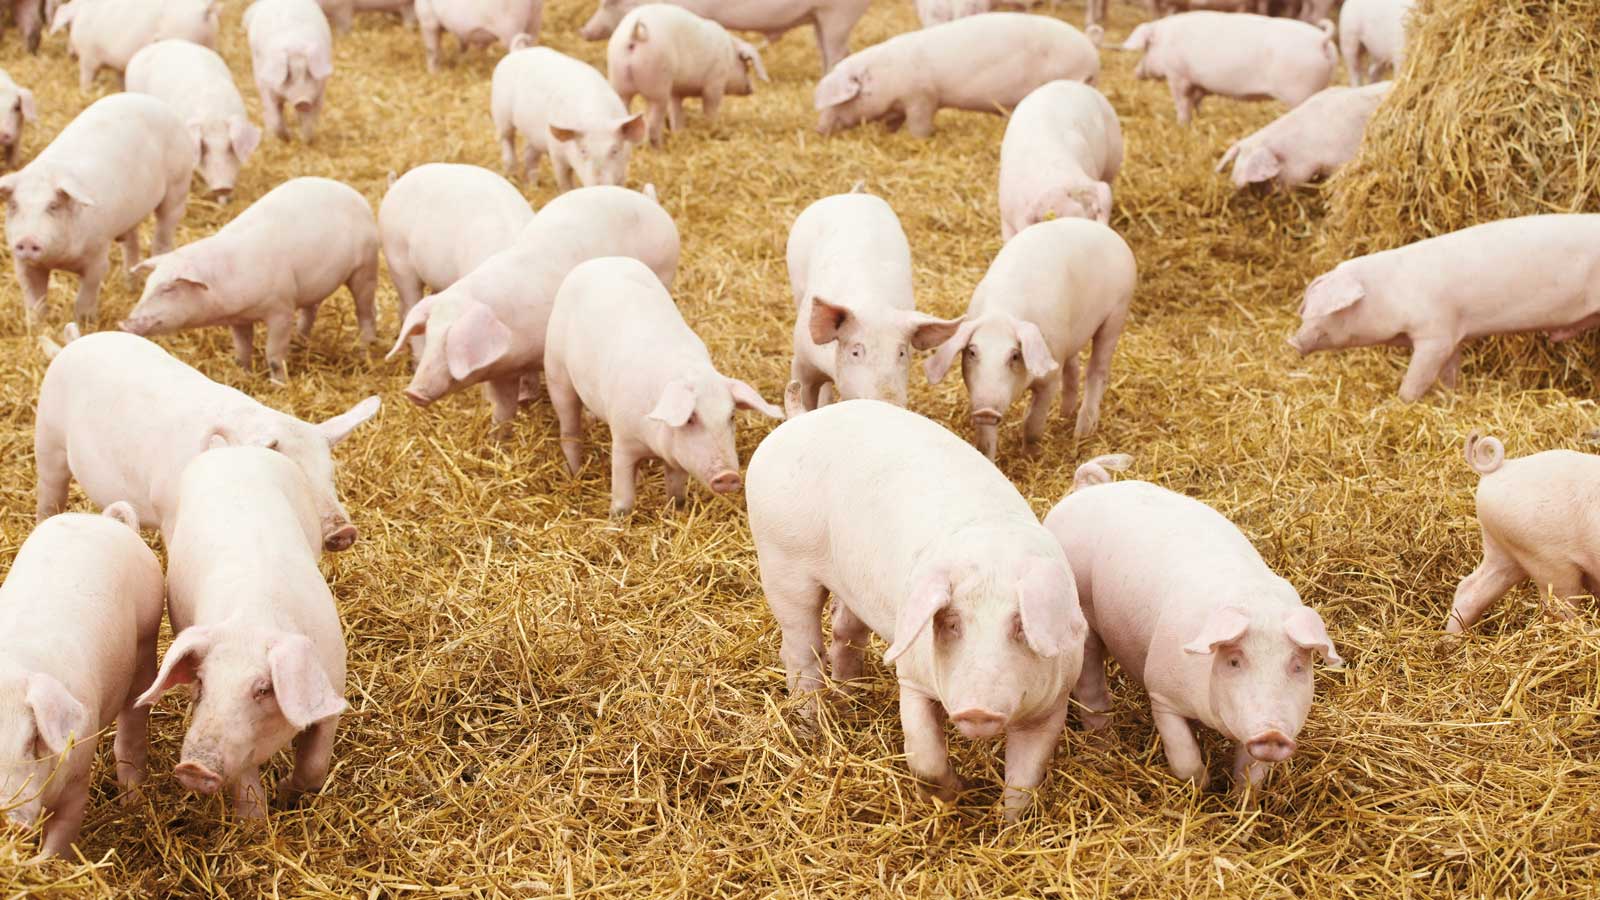 Niedrigster Stand an Schweinen seit Wiedervereinigung